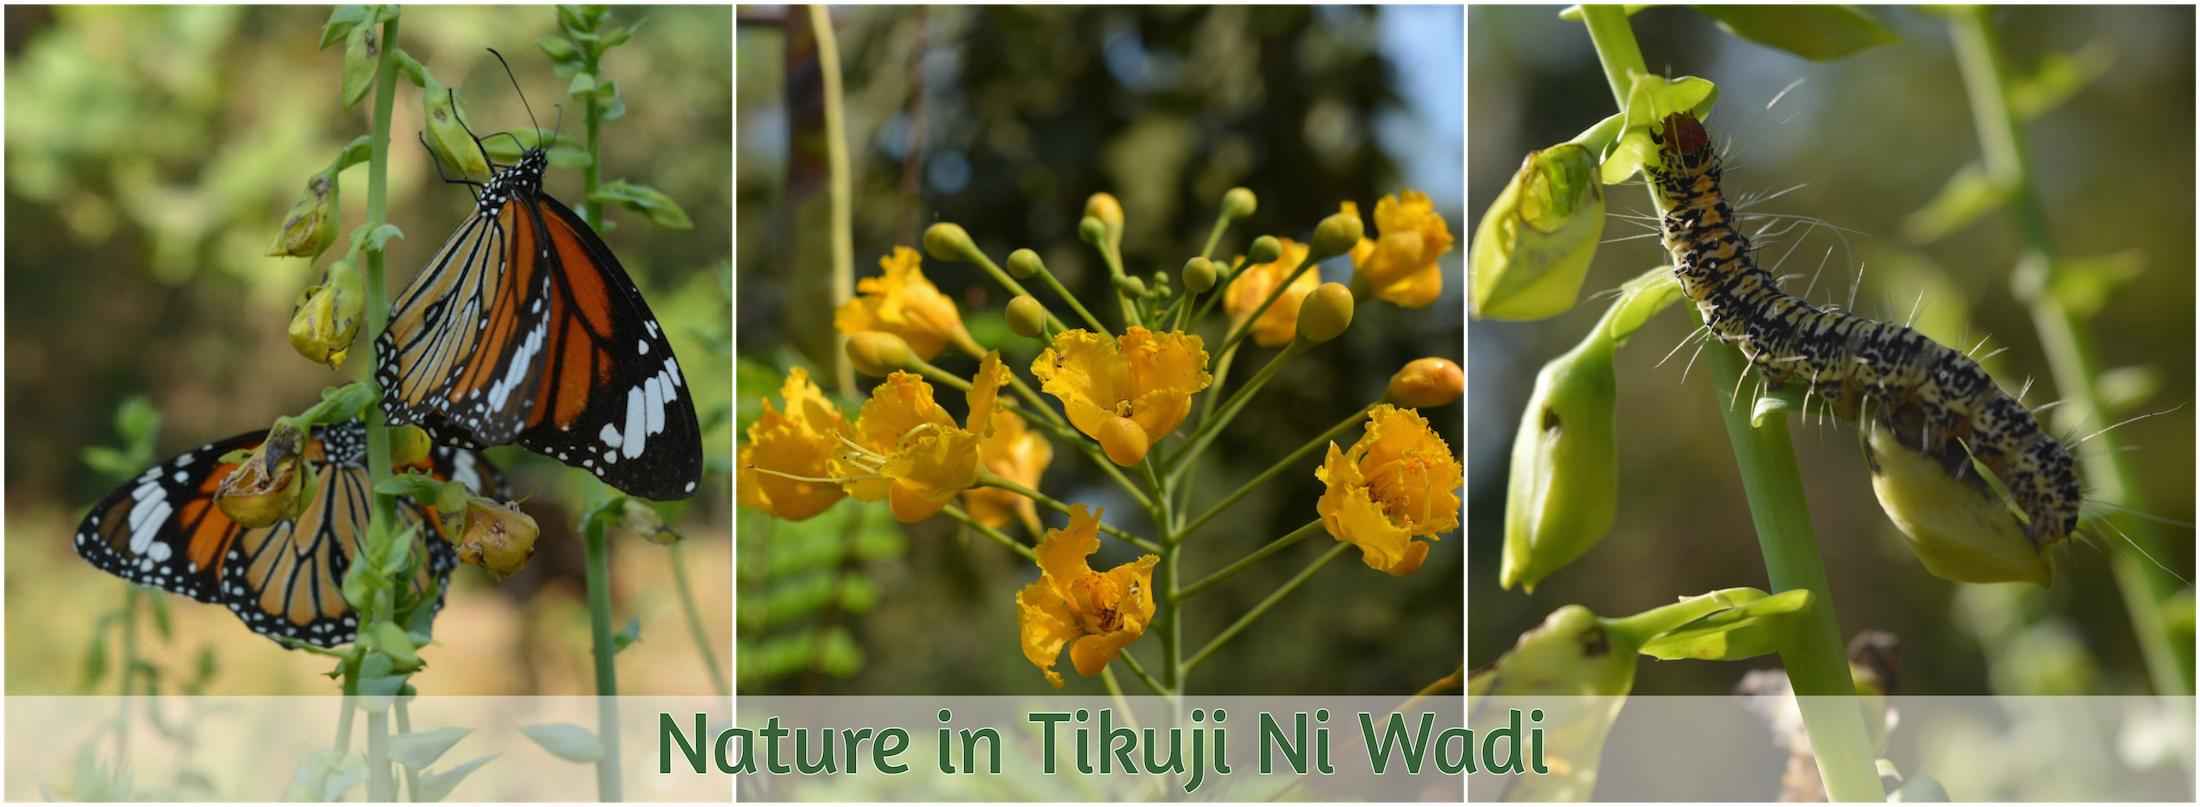 Nature-in-Tikuji-Ni-Wadi.jpg